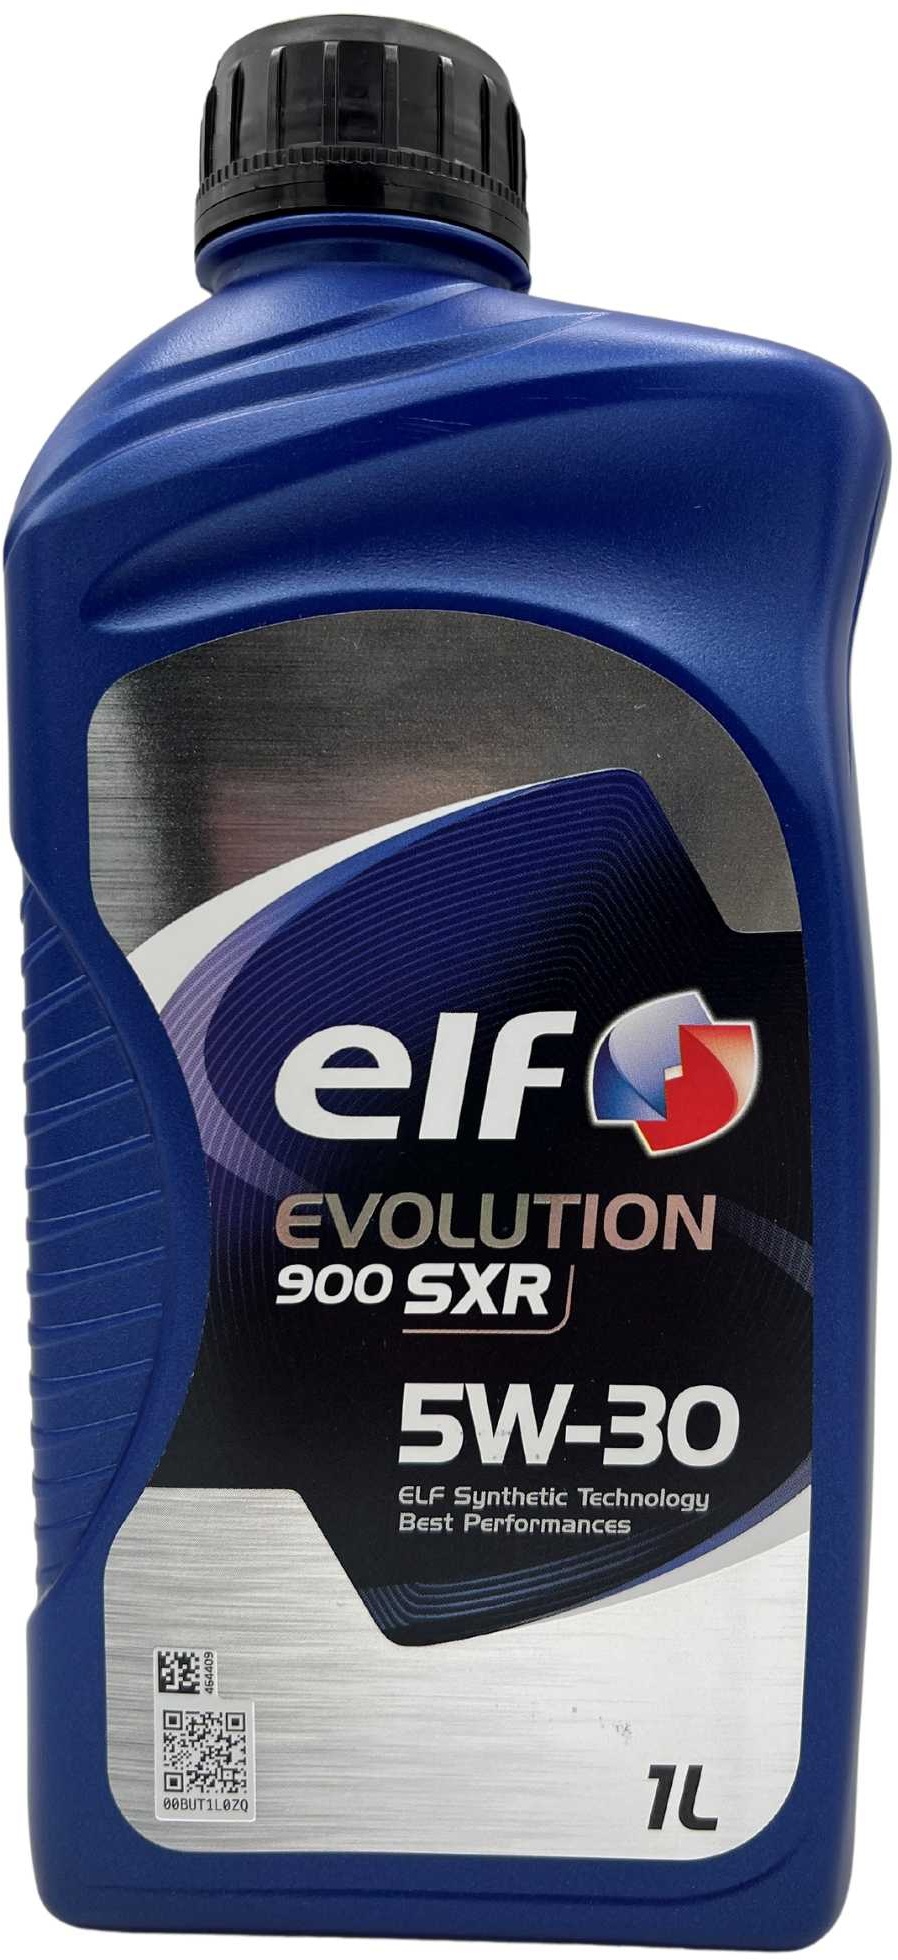 Elf Evolution 900 SXR 5W-30 1 Liter